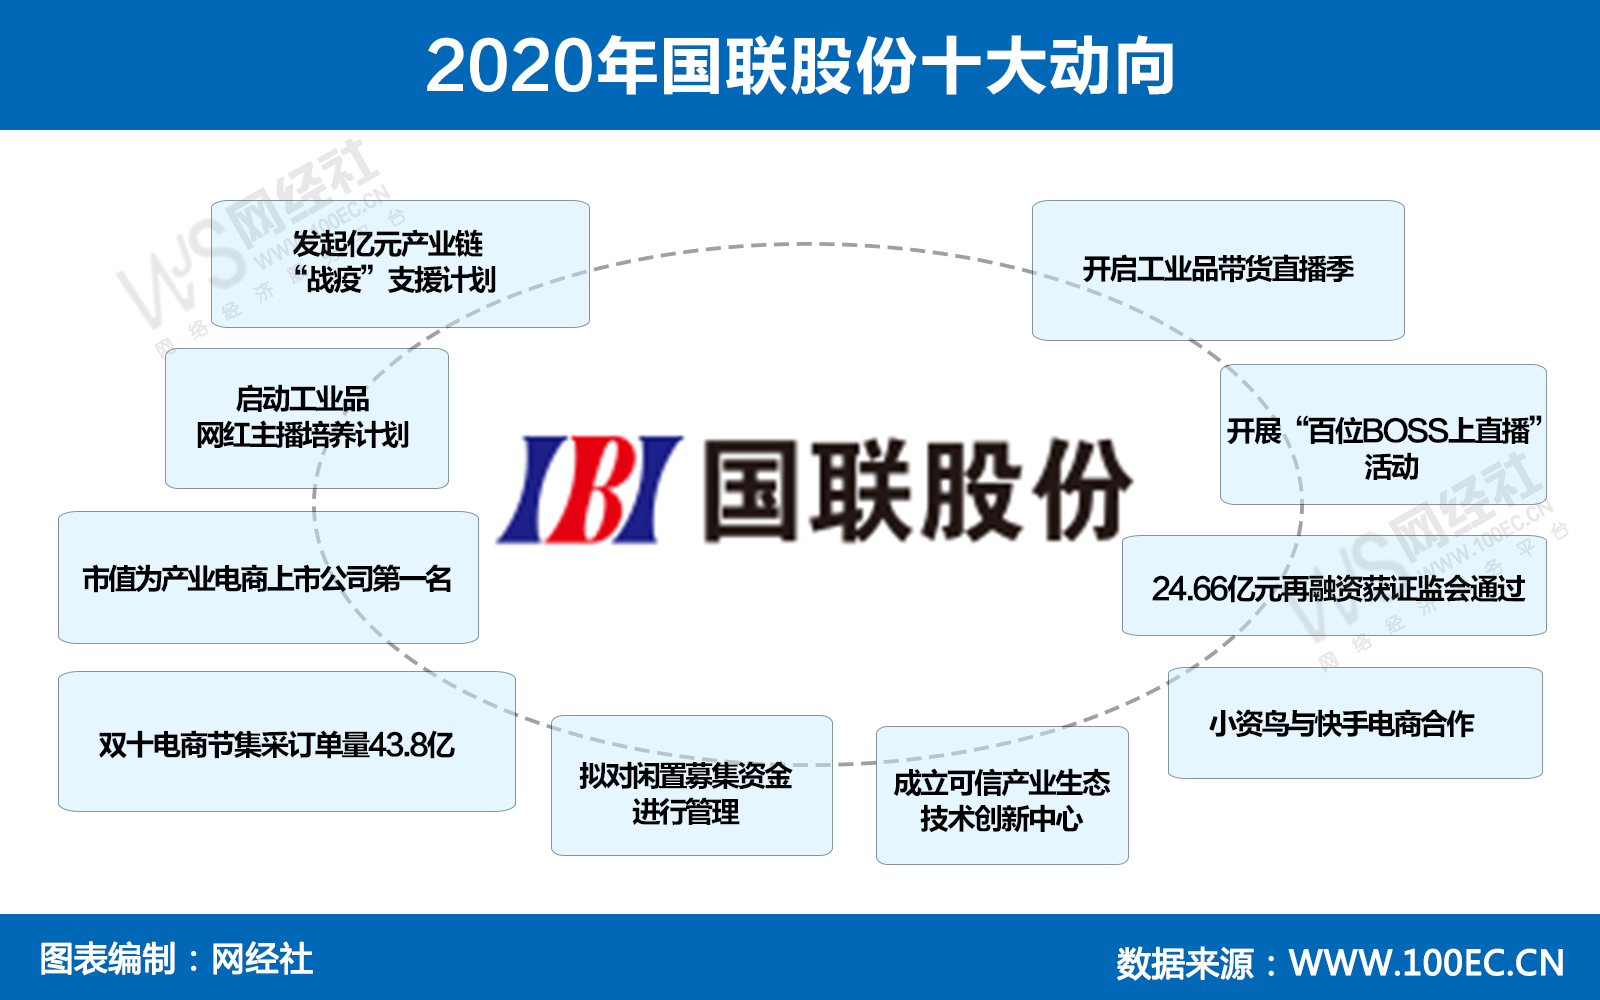 2020年国联股份十大动向(2).jpg